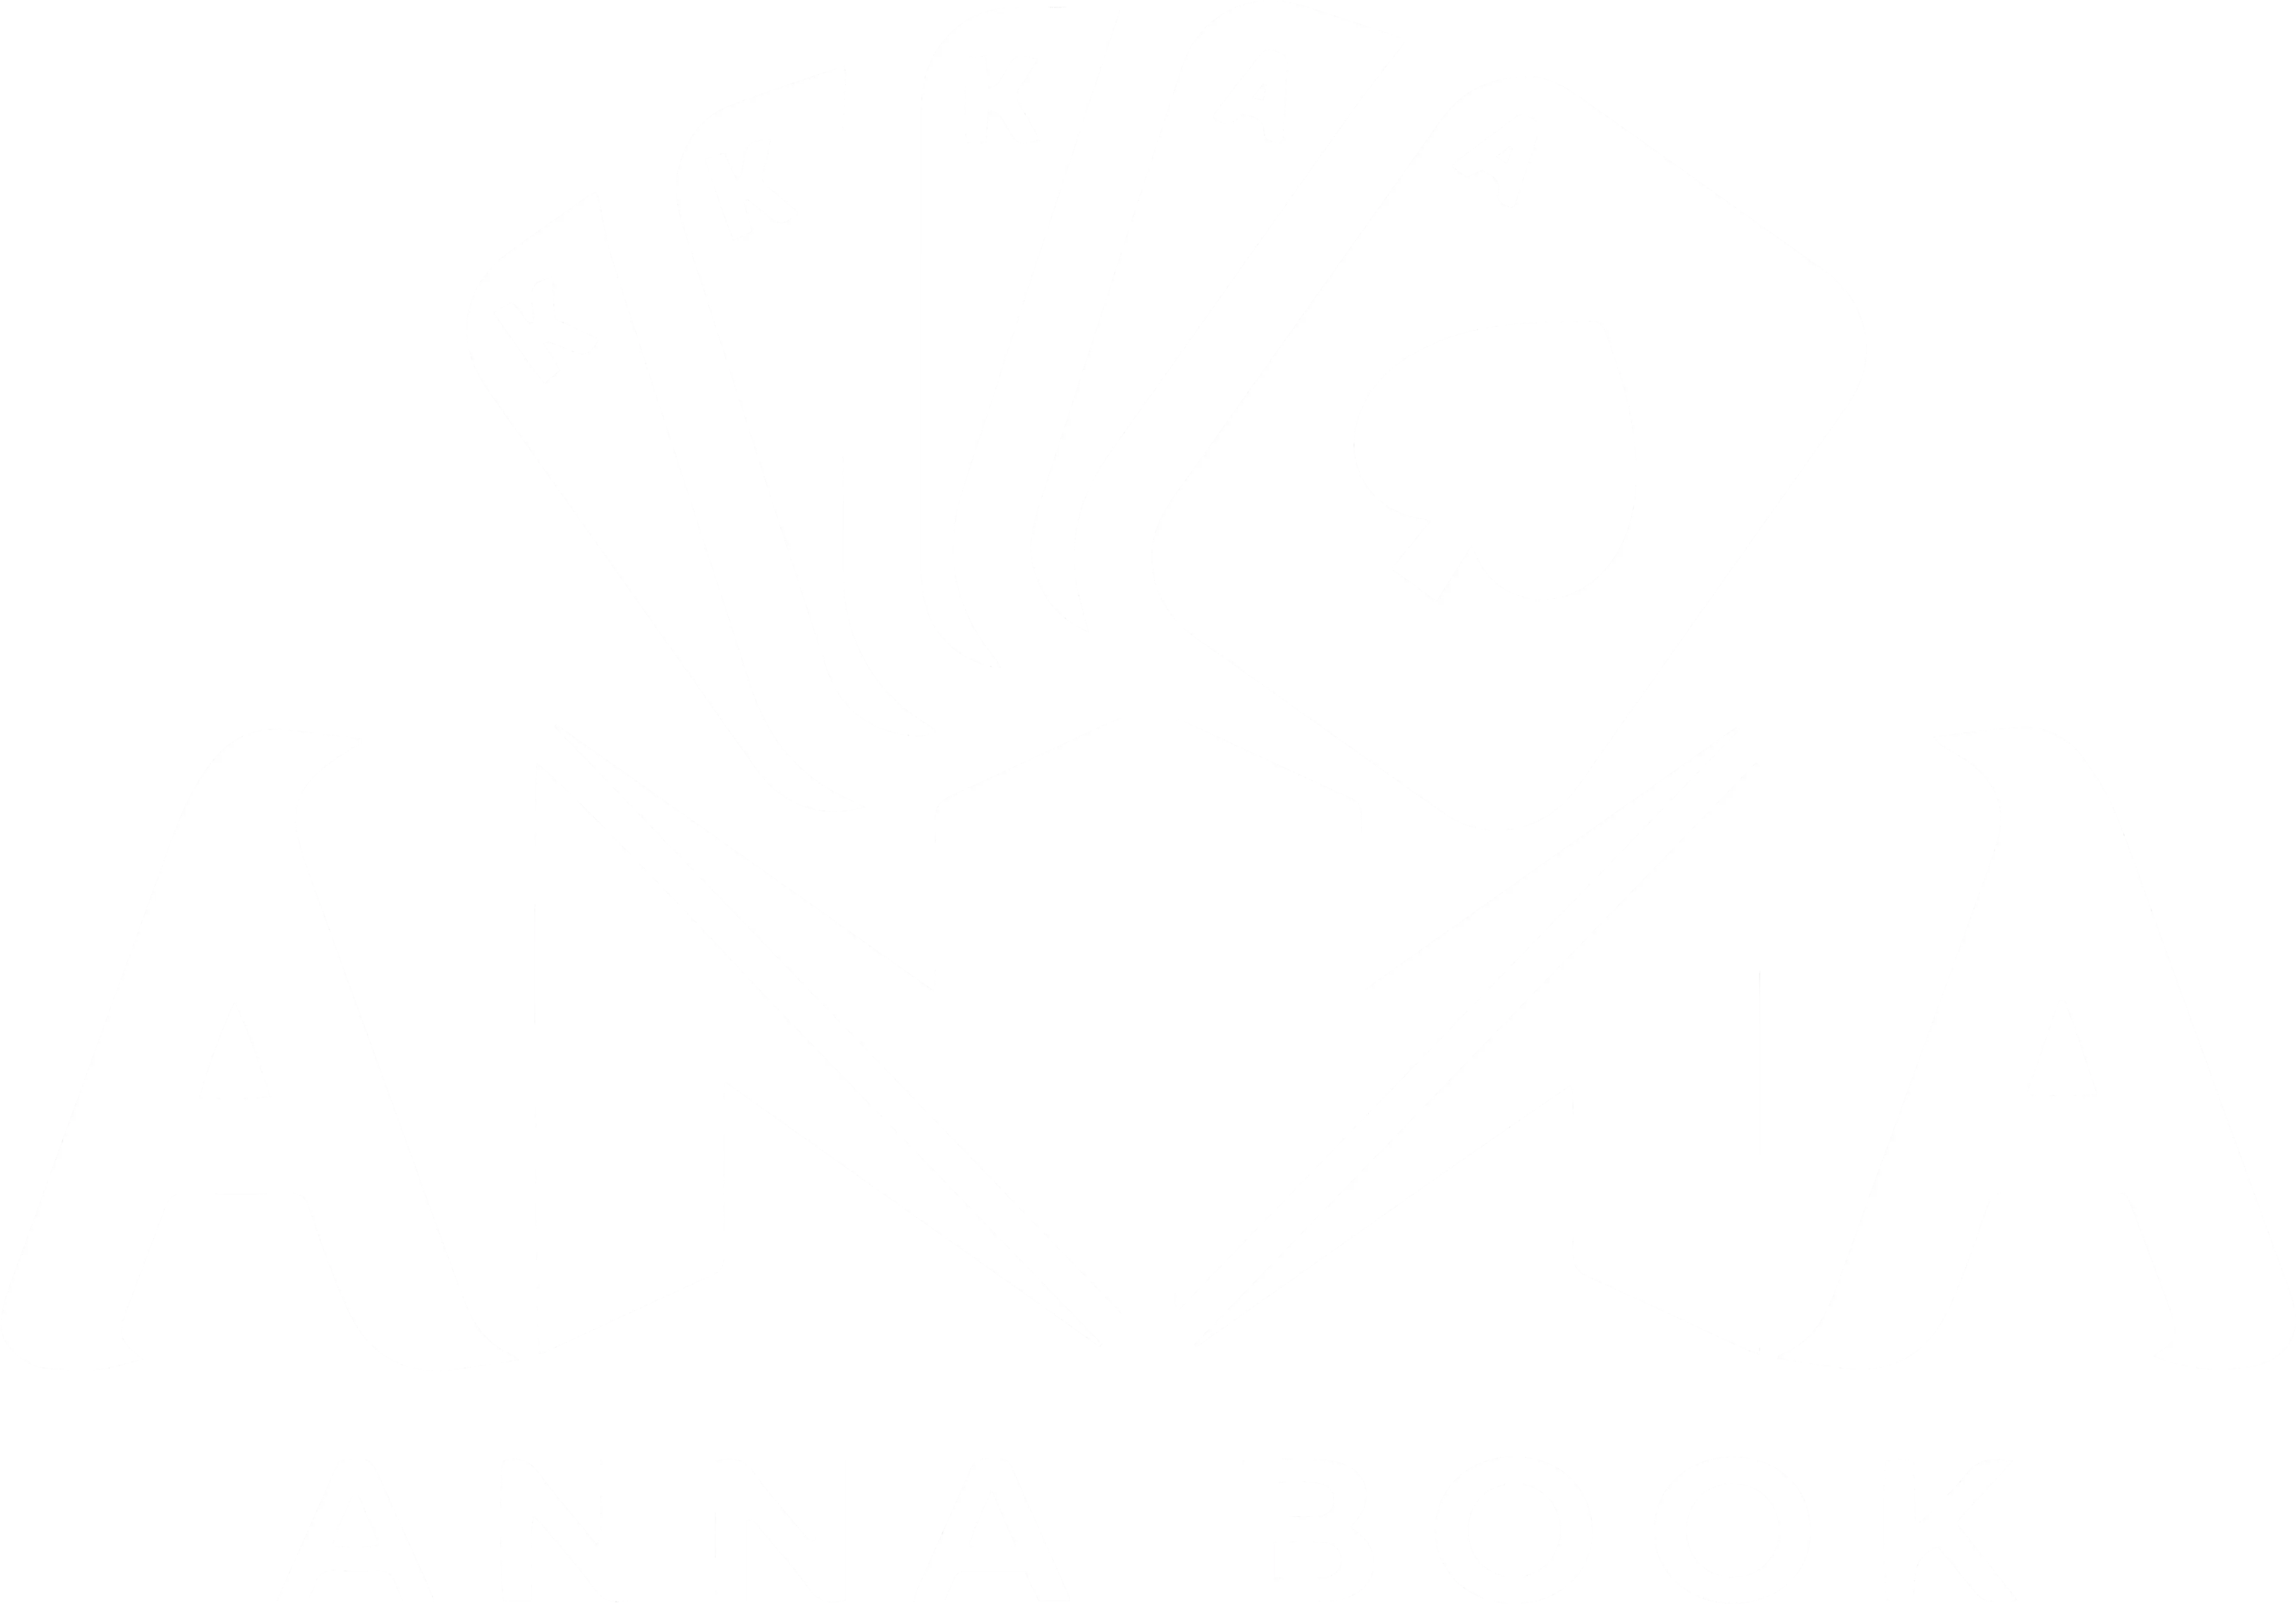 Anna Book